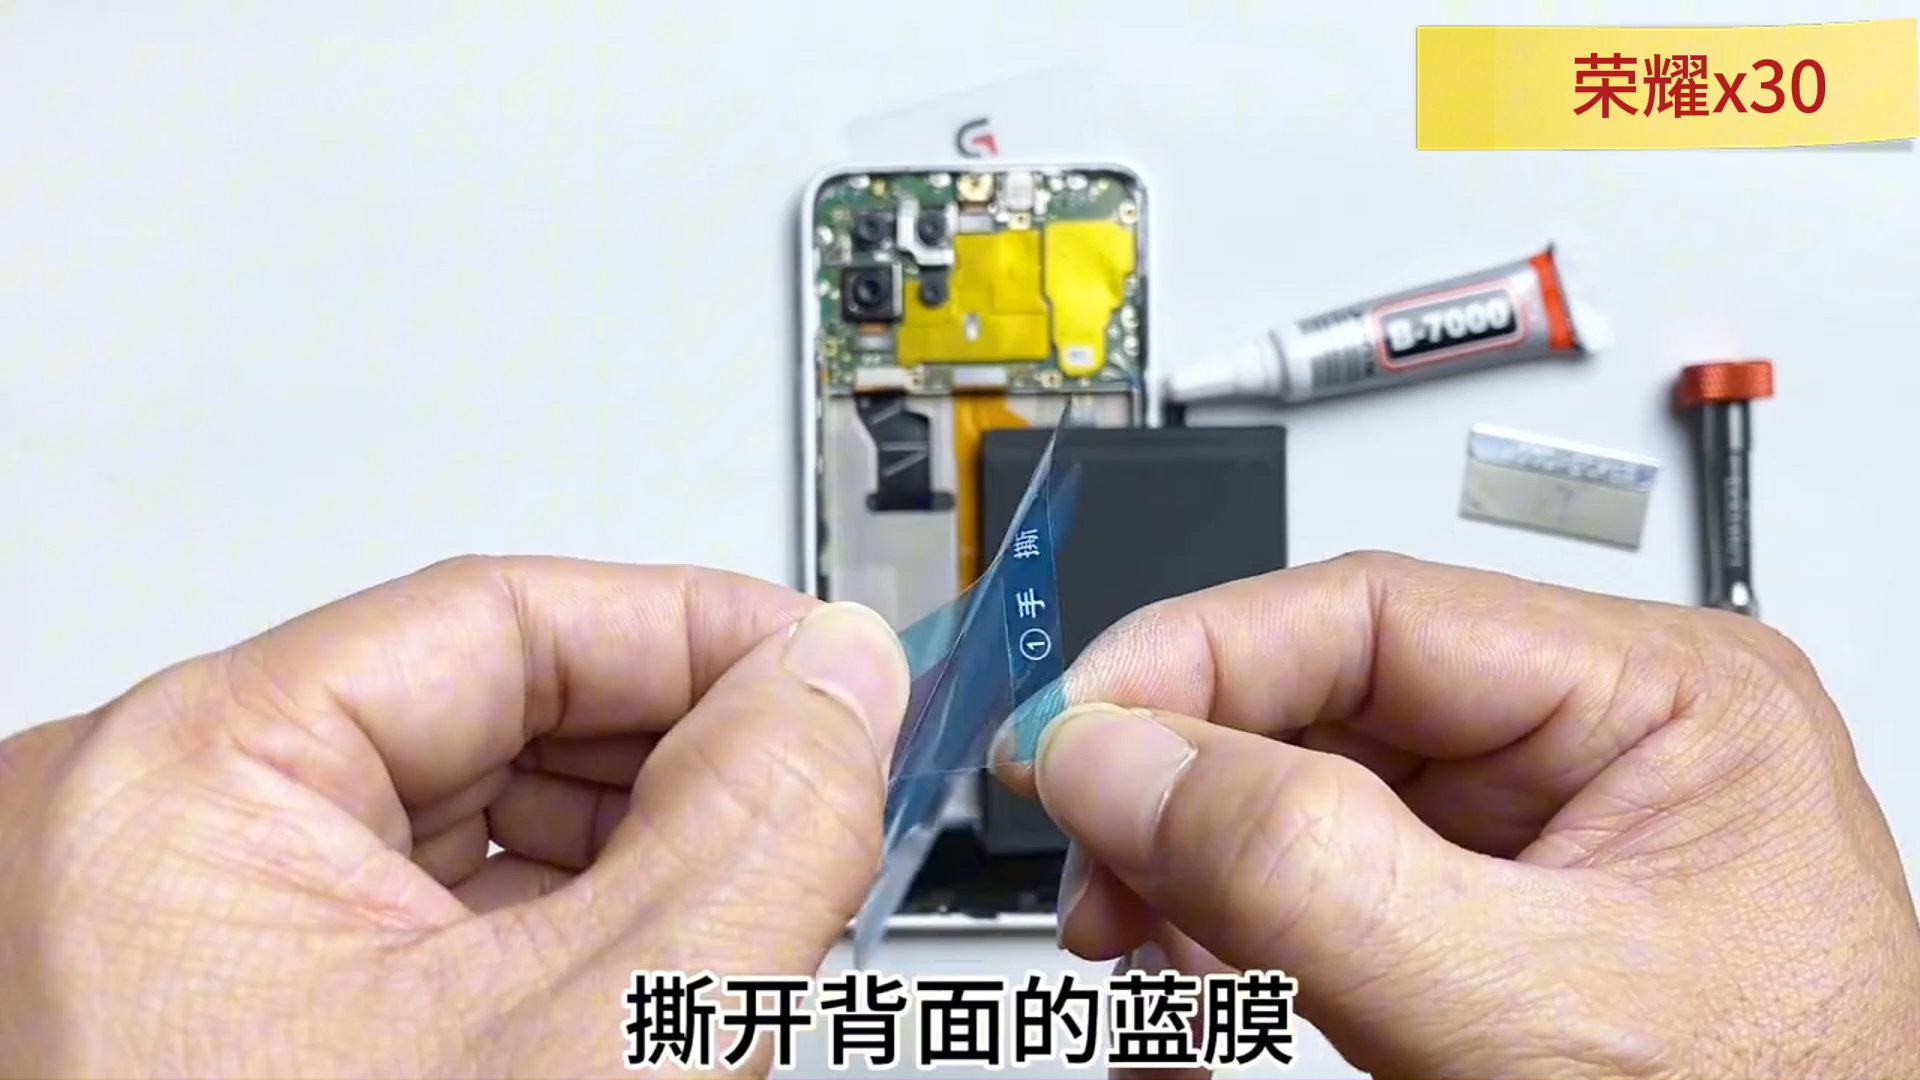 荣耀x30、x30i【HB466596EFW】手机更换电池教程视频【引导安装】